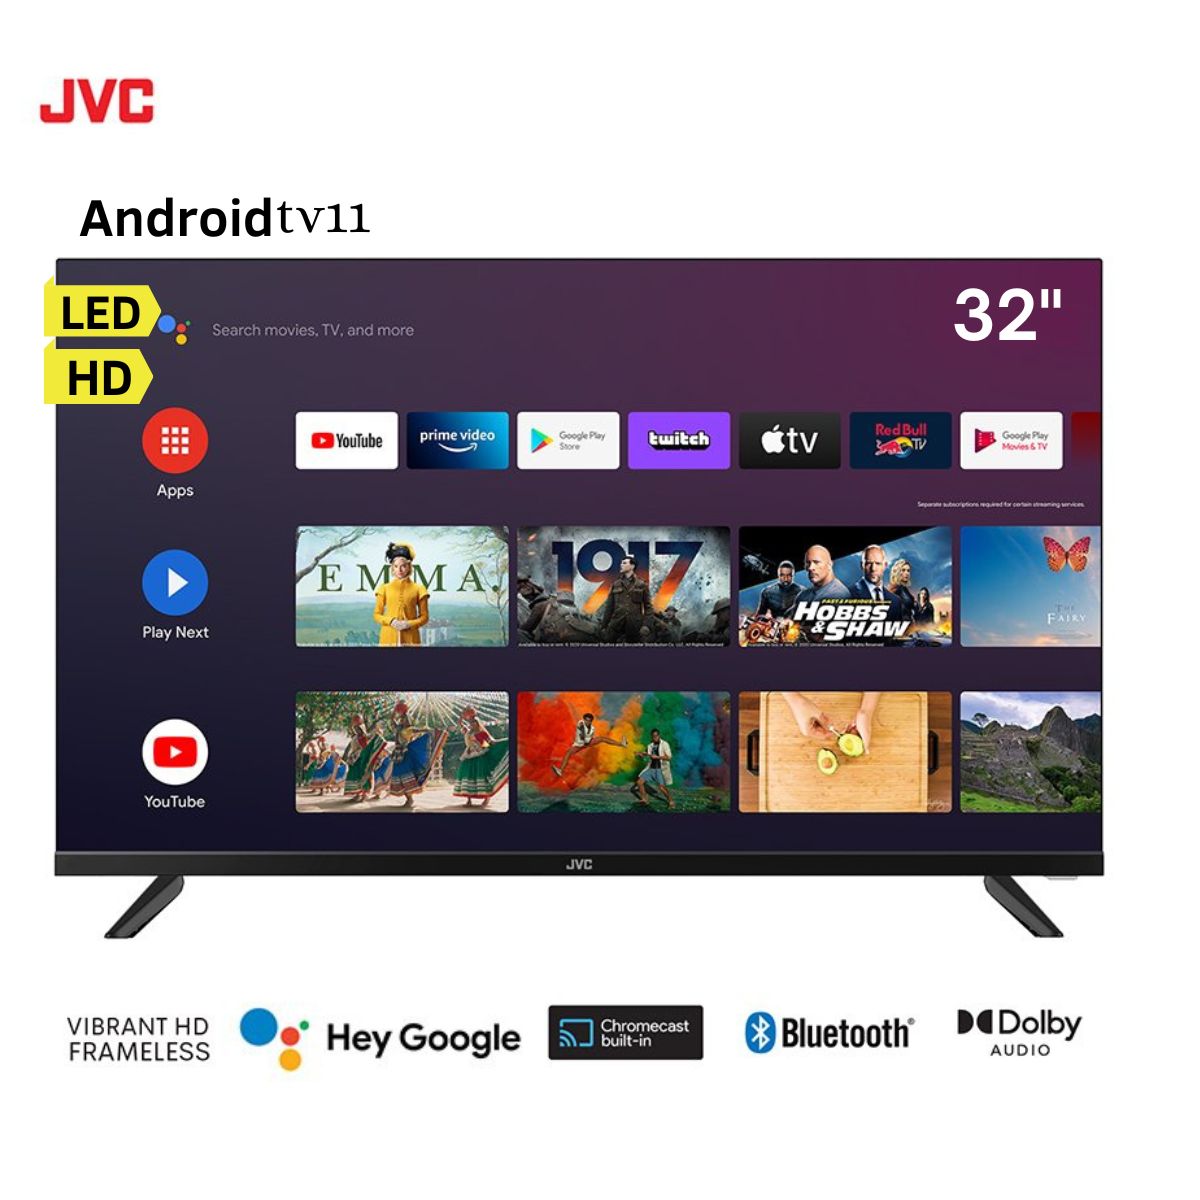 Televisor JVC LED Smart TV 32" HD Frameless AndroidTv11 LT-32KB127